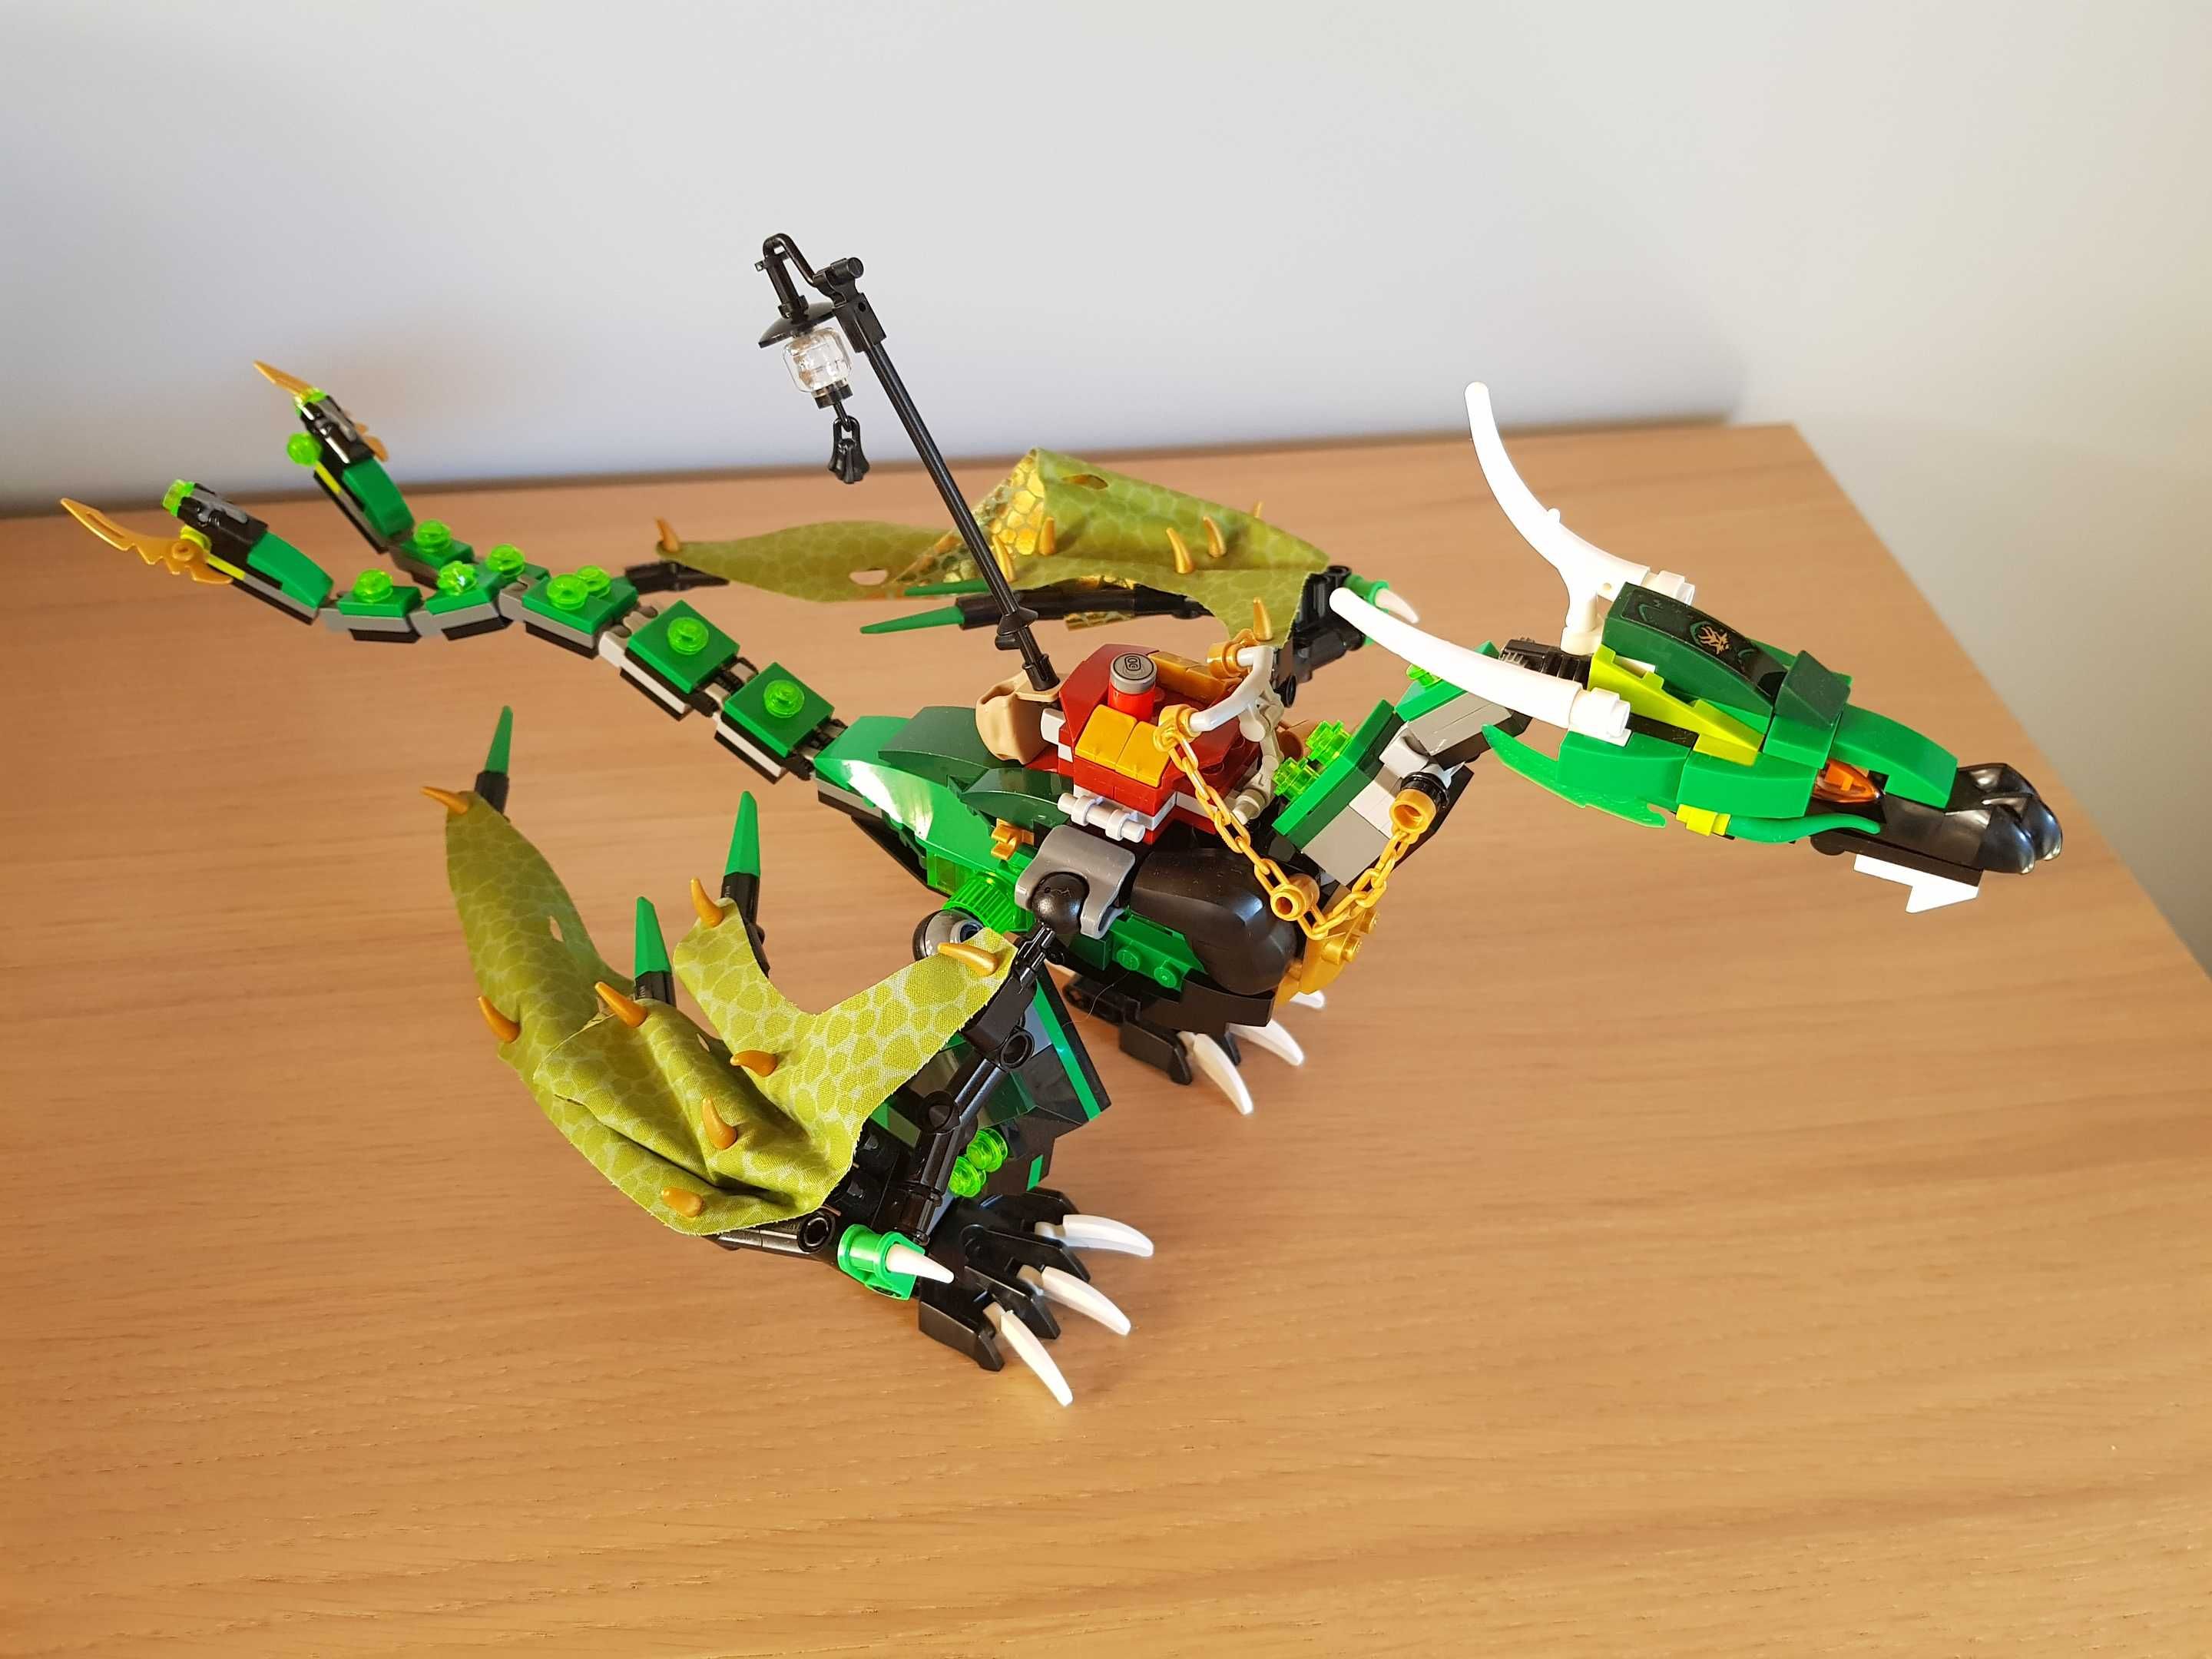 Lego Ninjago 70593